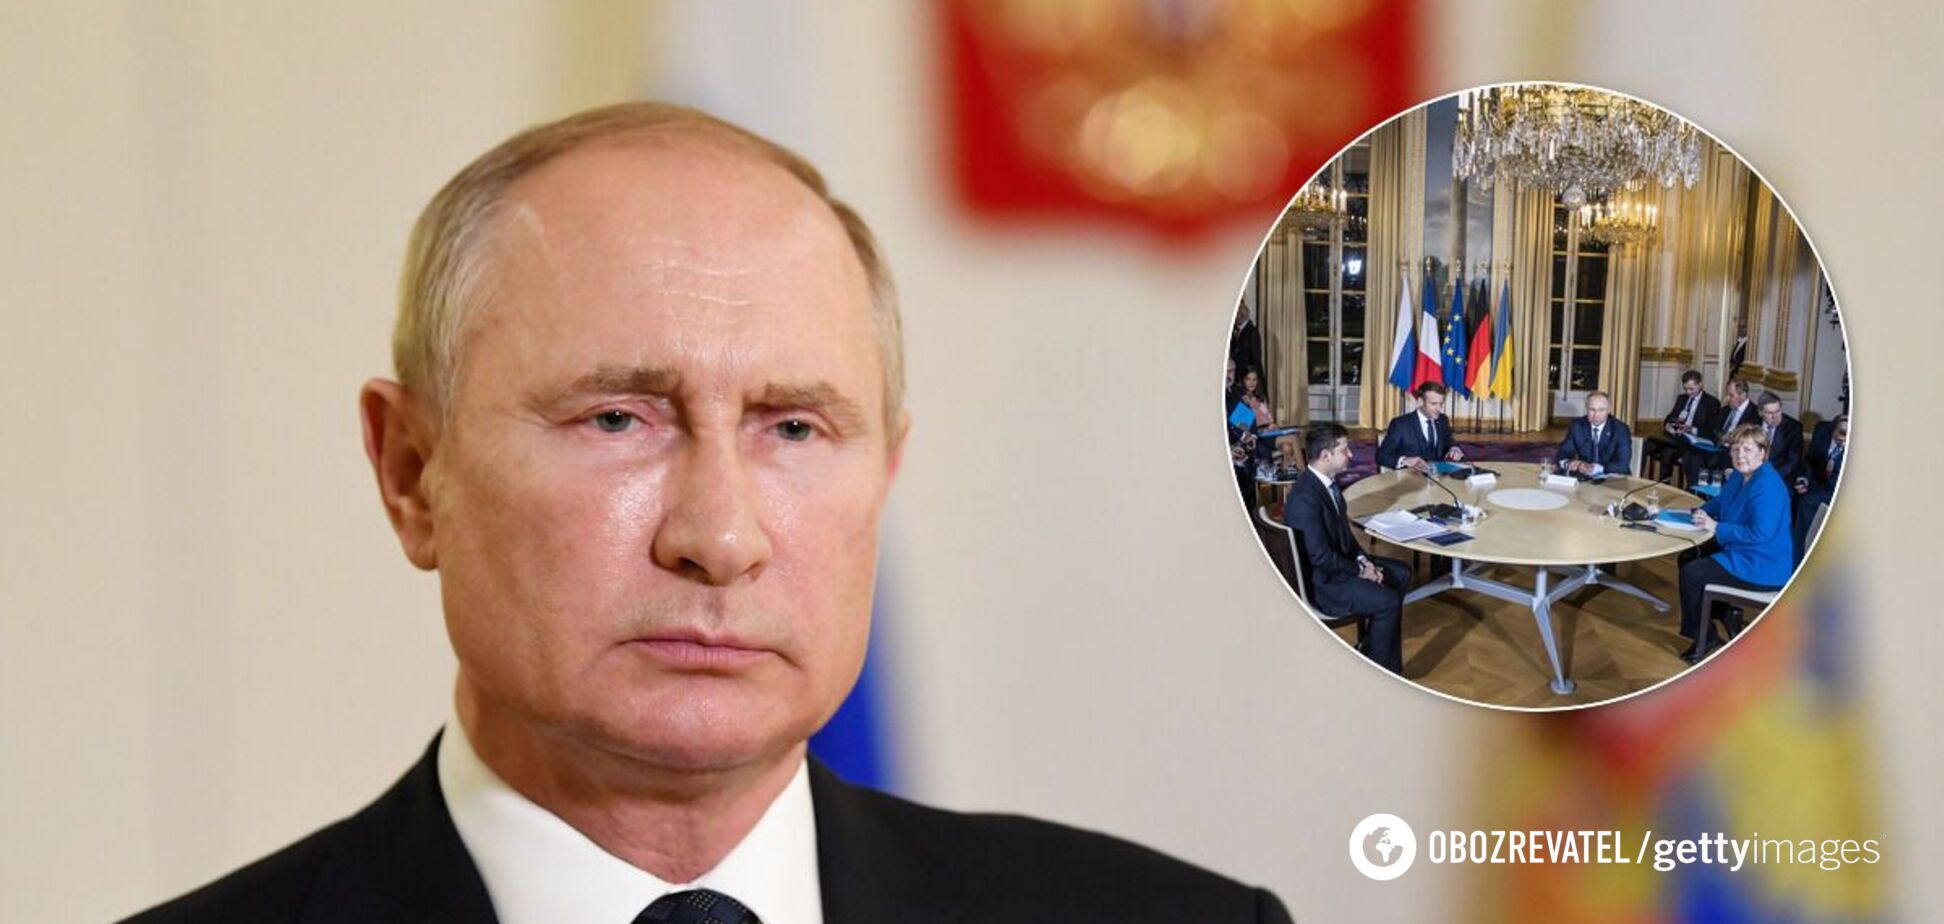 У Путина заявили, что встречу 'нормандской четверки' нужно еще готовить